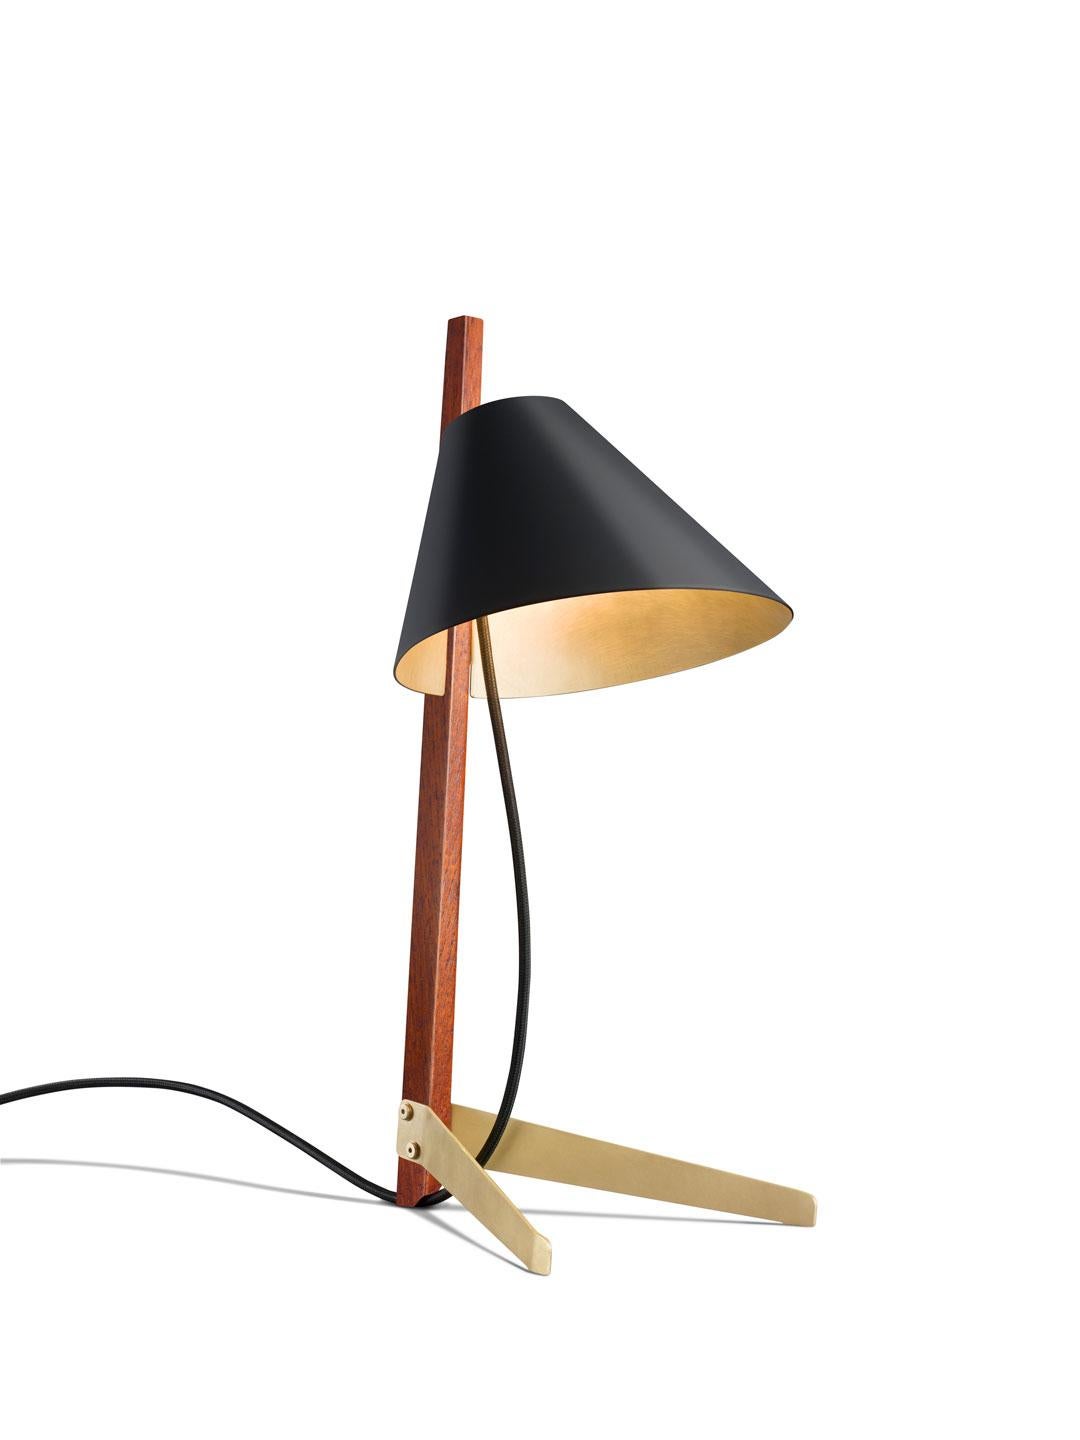 Brass Edition 'Billy TL' Table Lamp by J.T. Kalmar, Kalmar Werkstatte For Sale 2